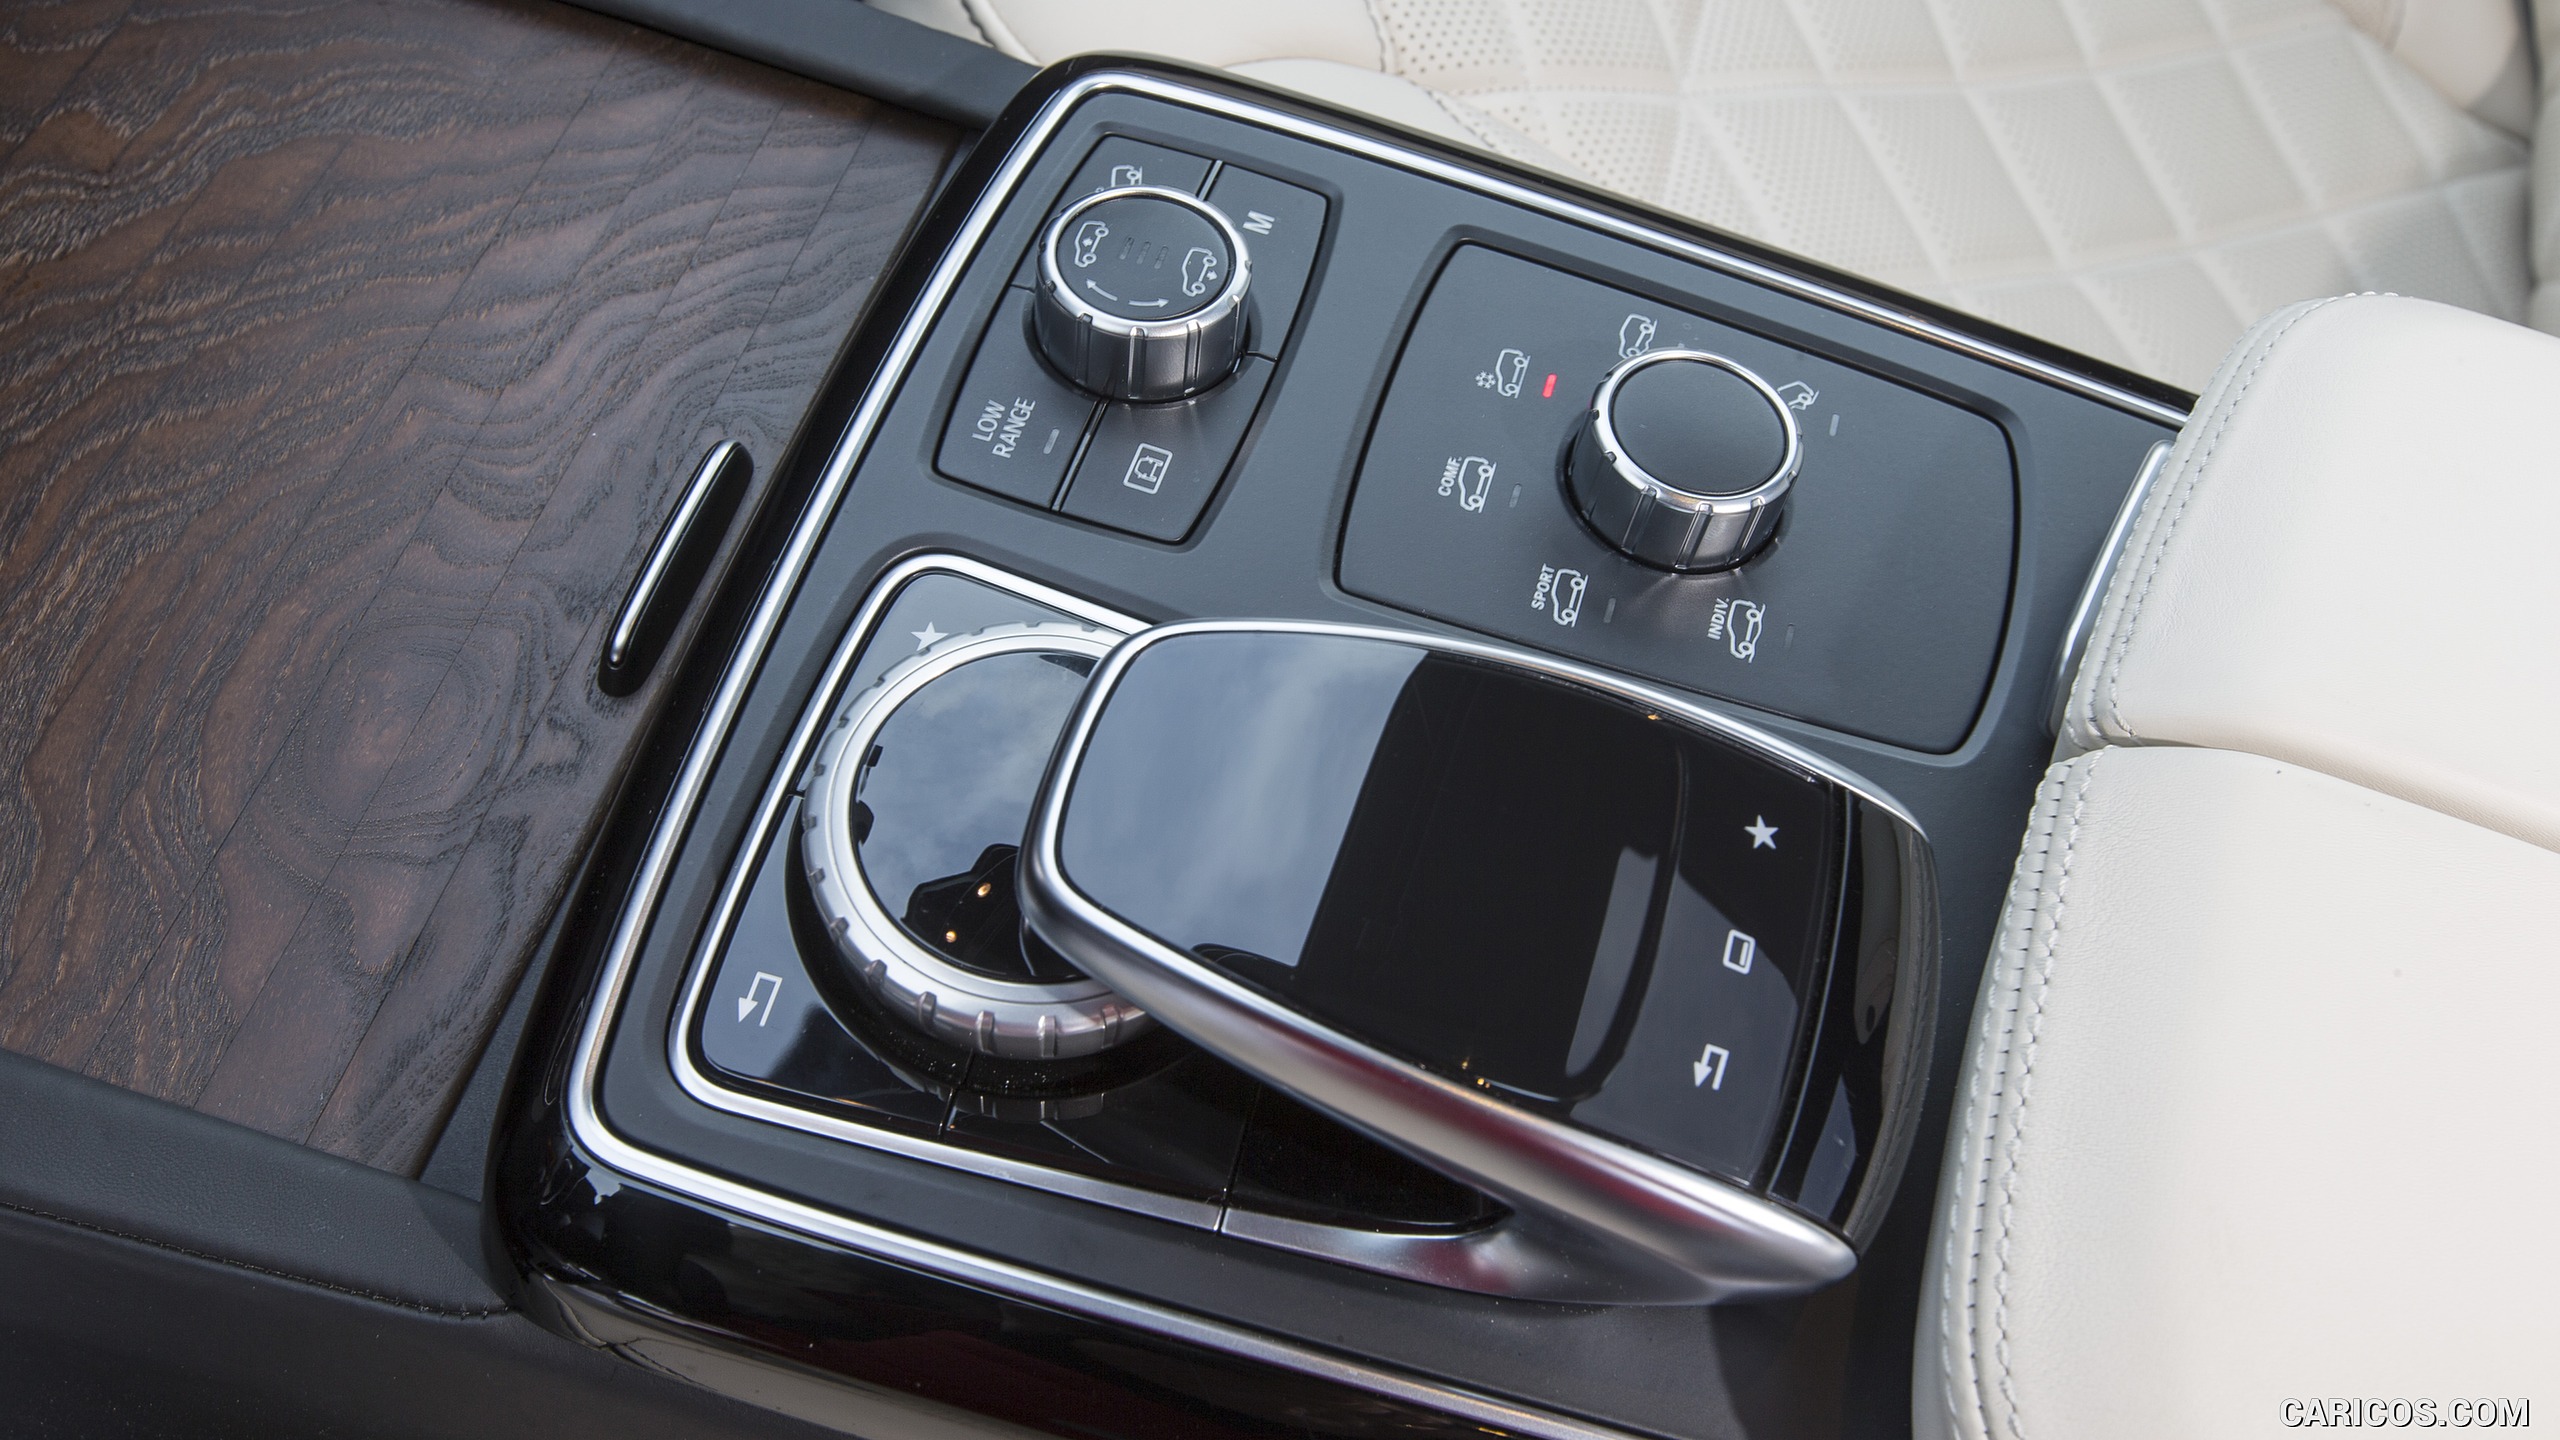 2017 Mercedes-Benz GLS 350d 4MATIC AMG Line - Interior, Controls, #211 of 255